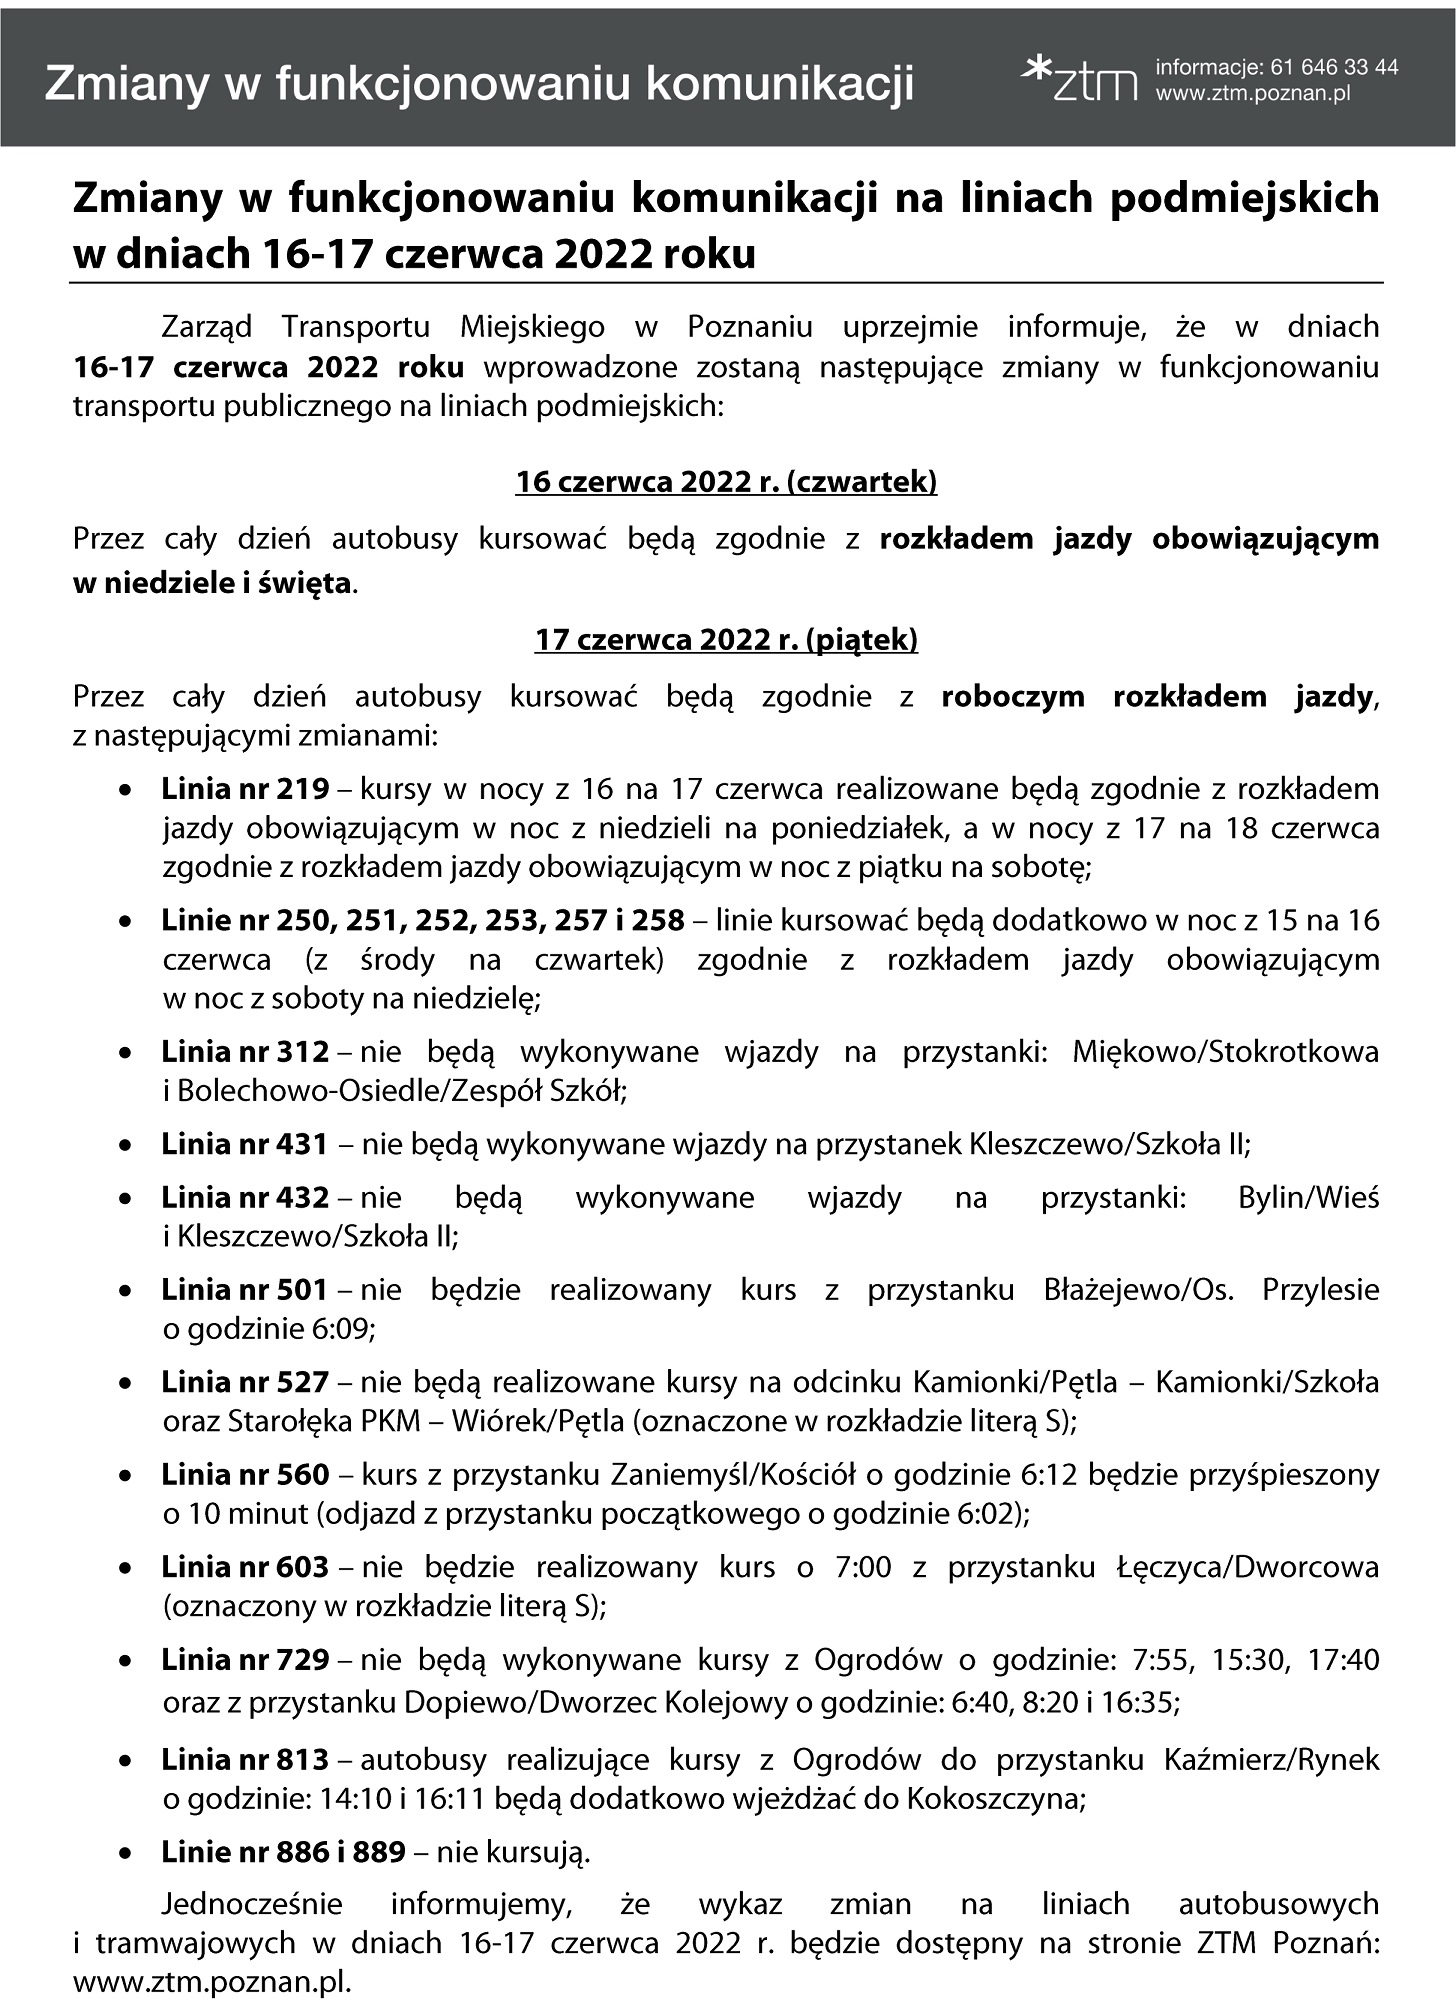 Zmiany w funkcjonowaniu komunikacji na liniach podmiejskich w dniach 16-17 czerwca br.